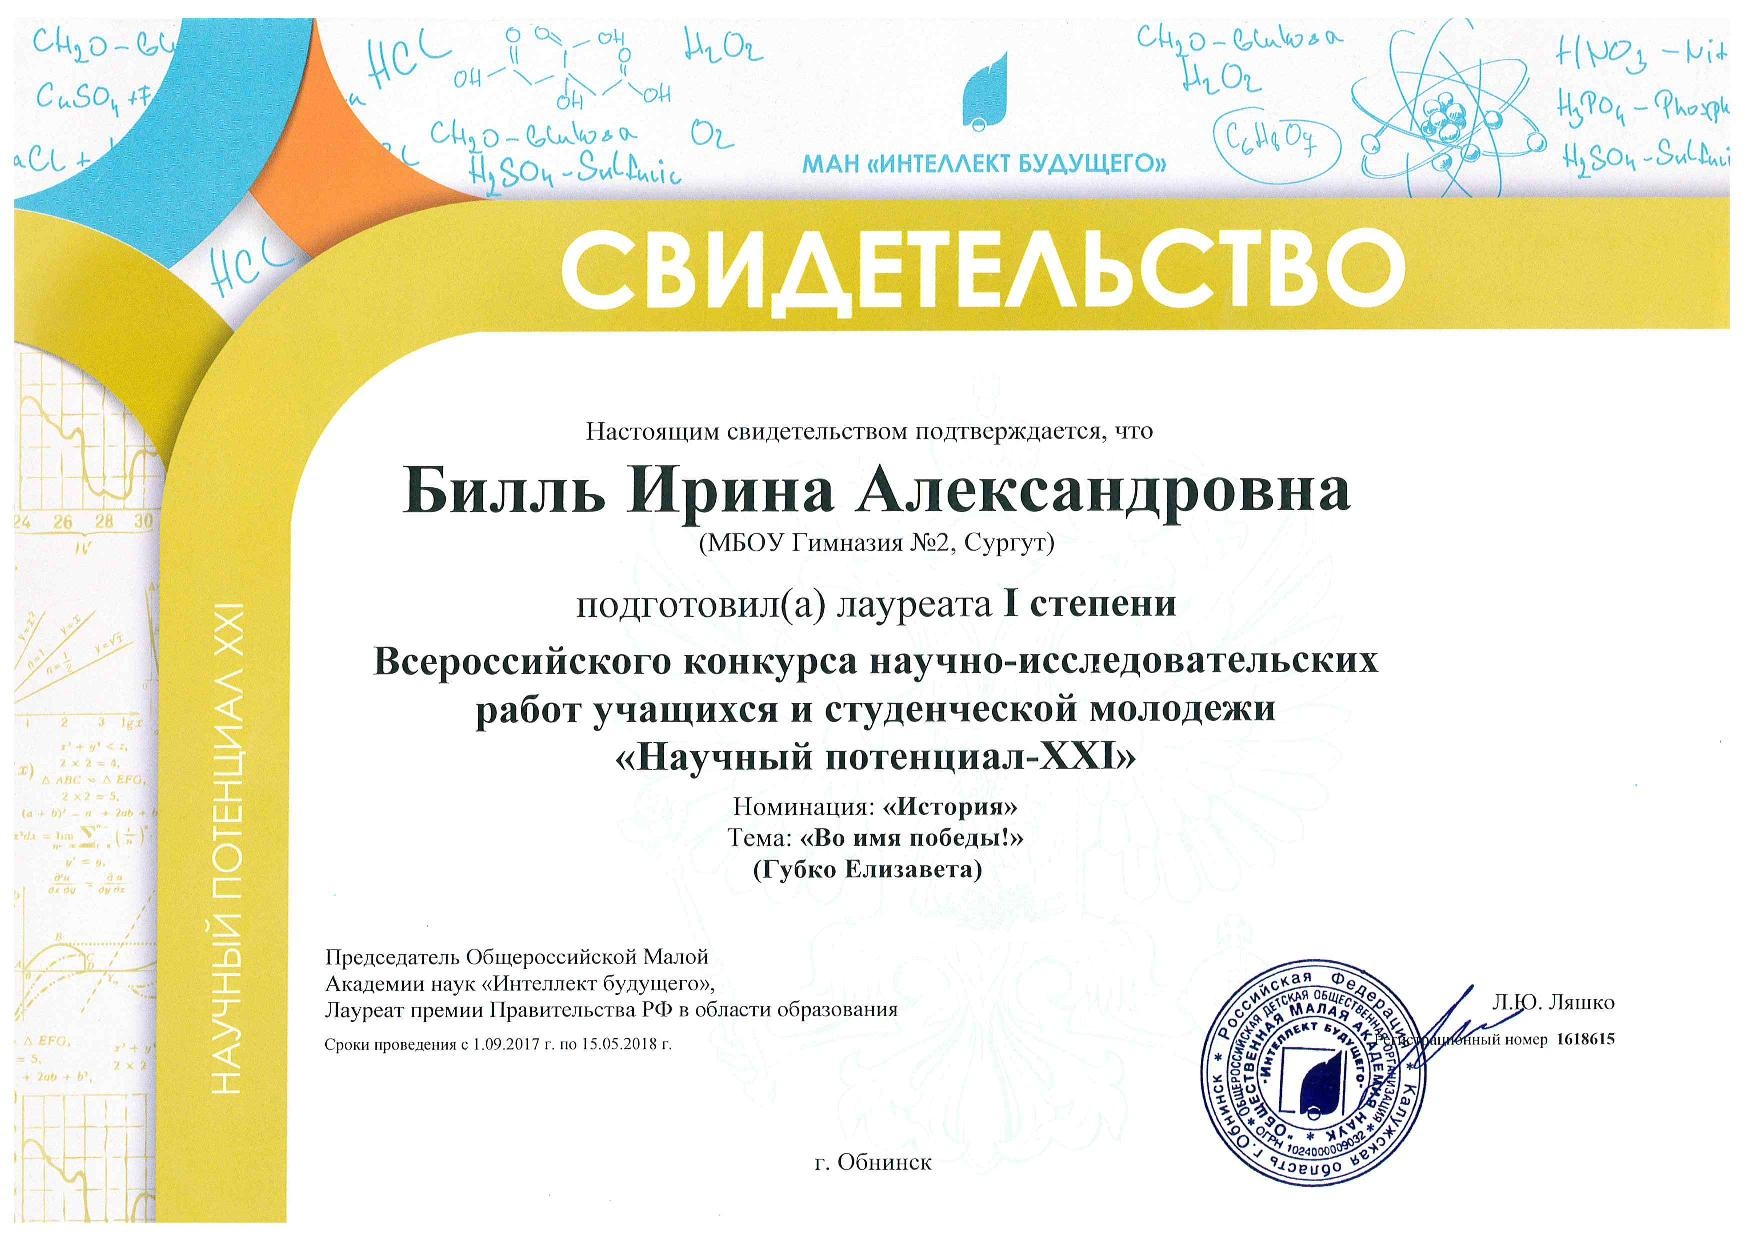 Сертификат о подготовке Лауреата всероссийского конкурса "Научный потенциал - XXI"